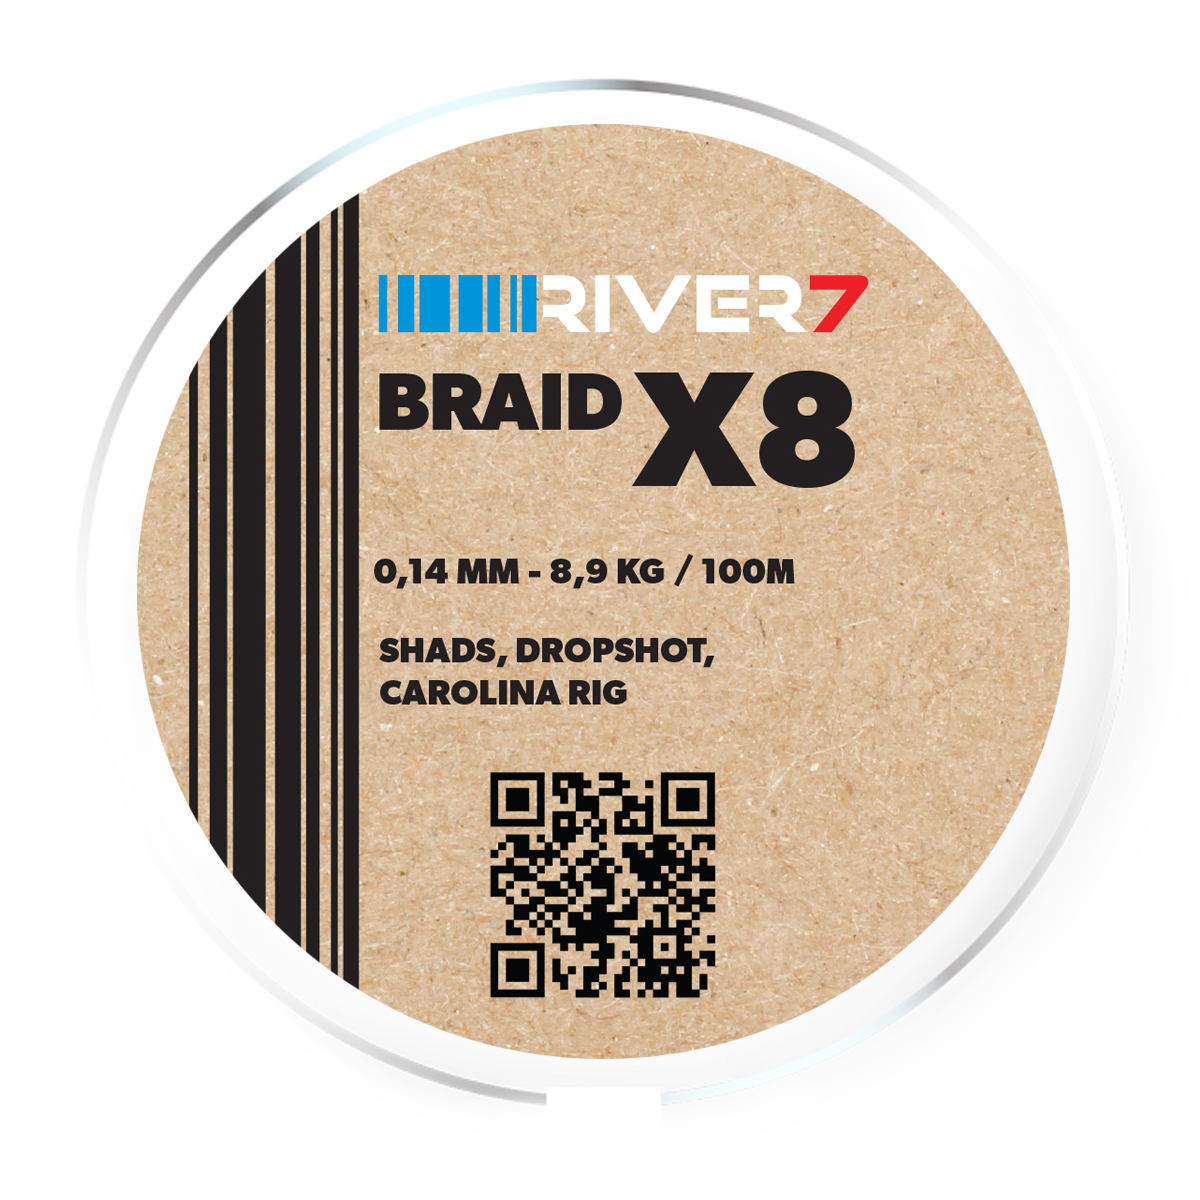 River7 X8 Braid -  0.14 mm